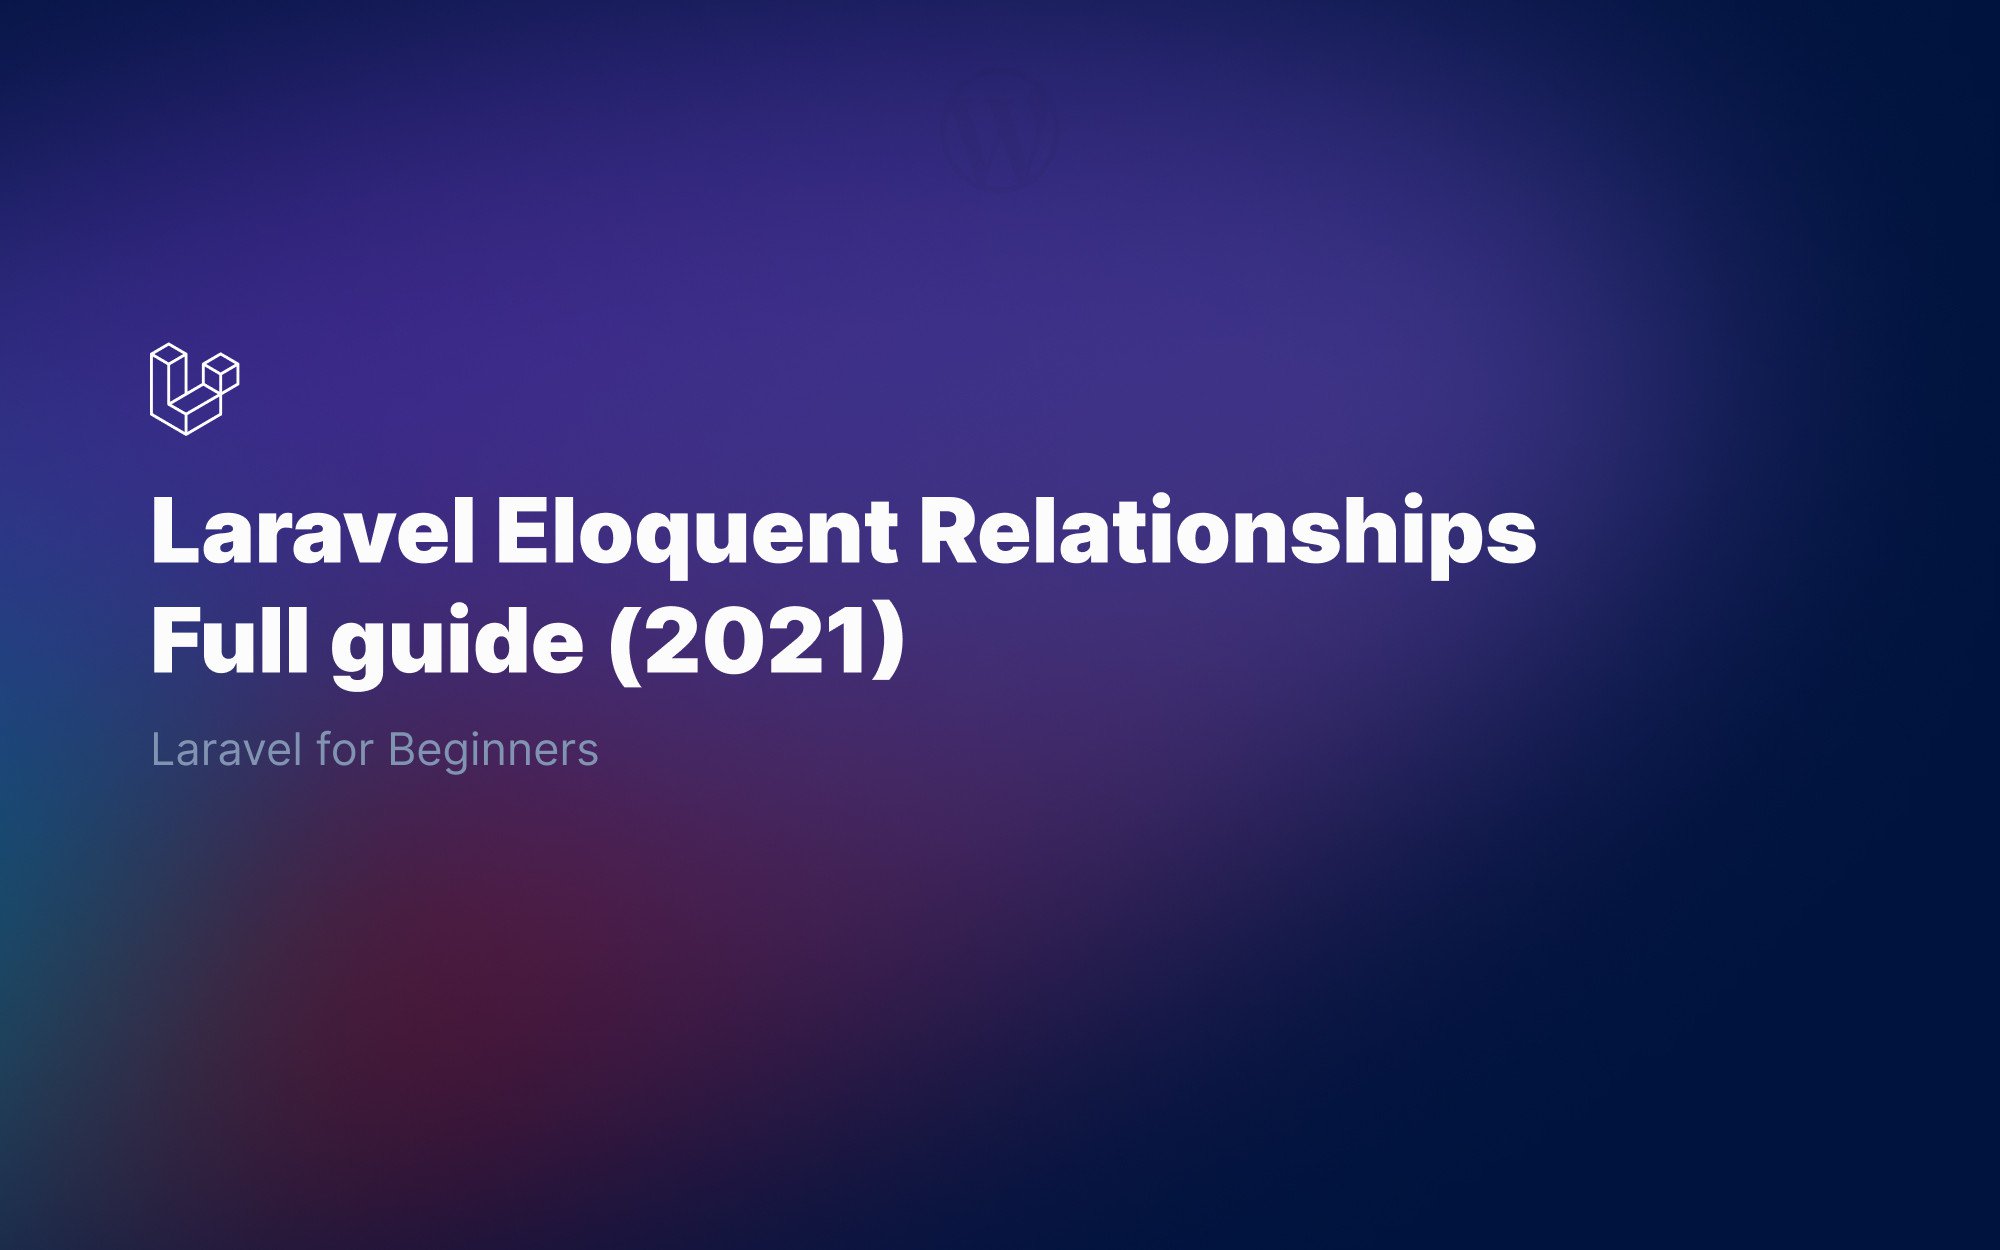 Laravel Eloquent relationships for beginners - Full 2021 Guide